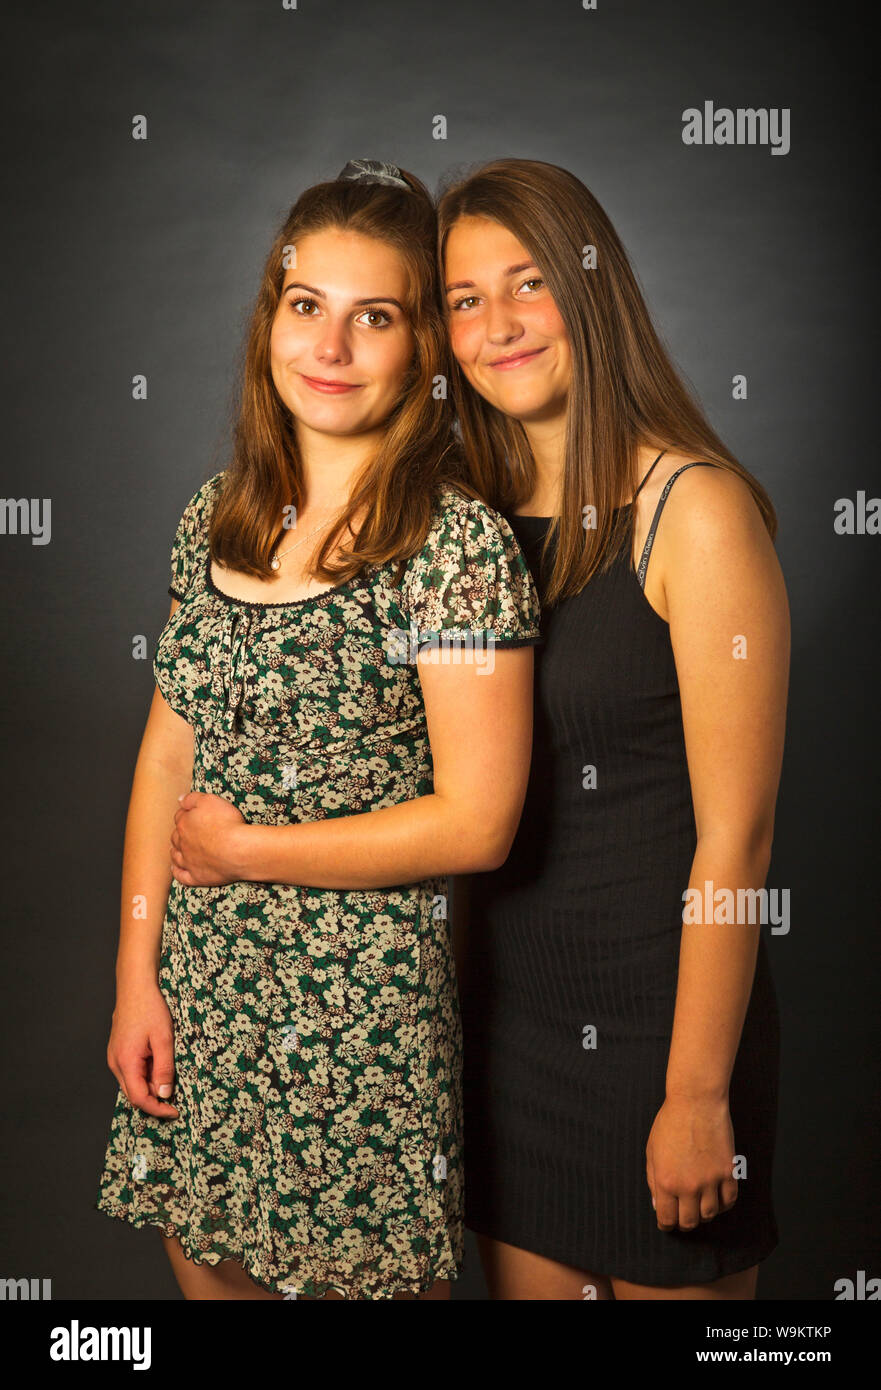 Un portrait de deux sœurs adolescentes dans un studio Banque D'Images